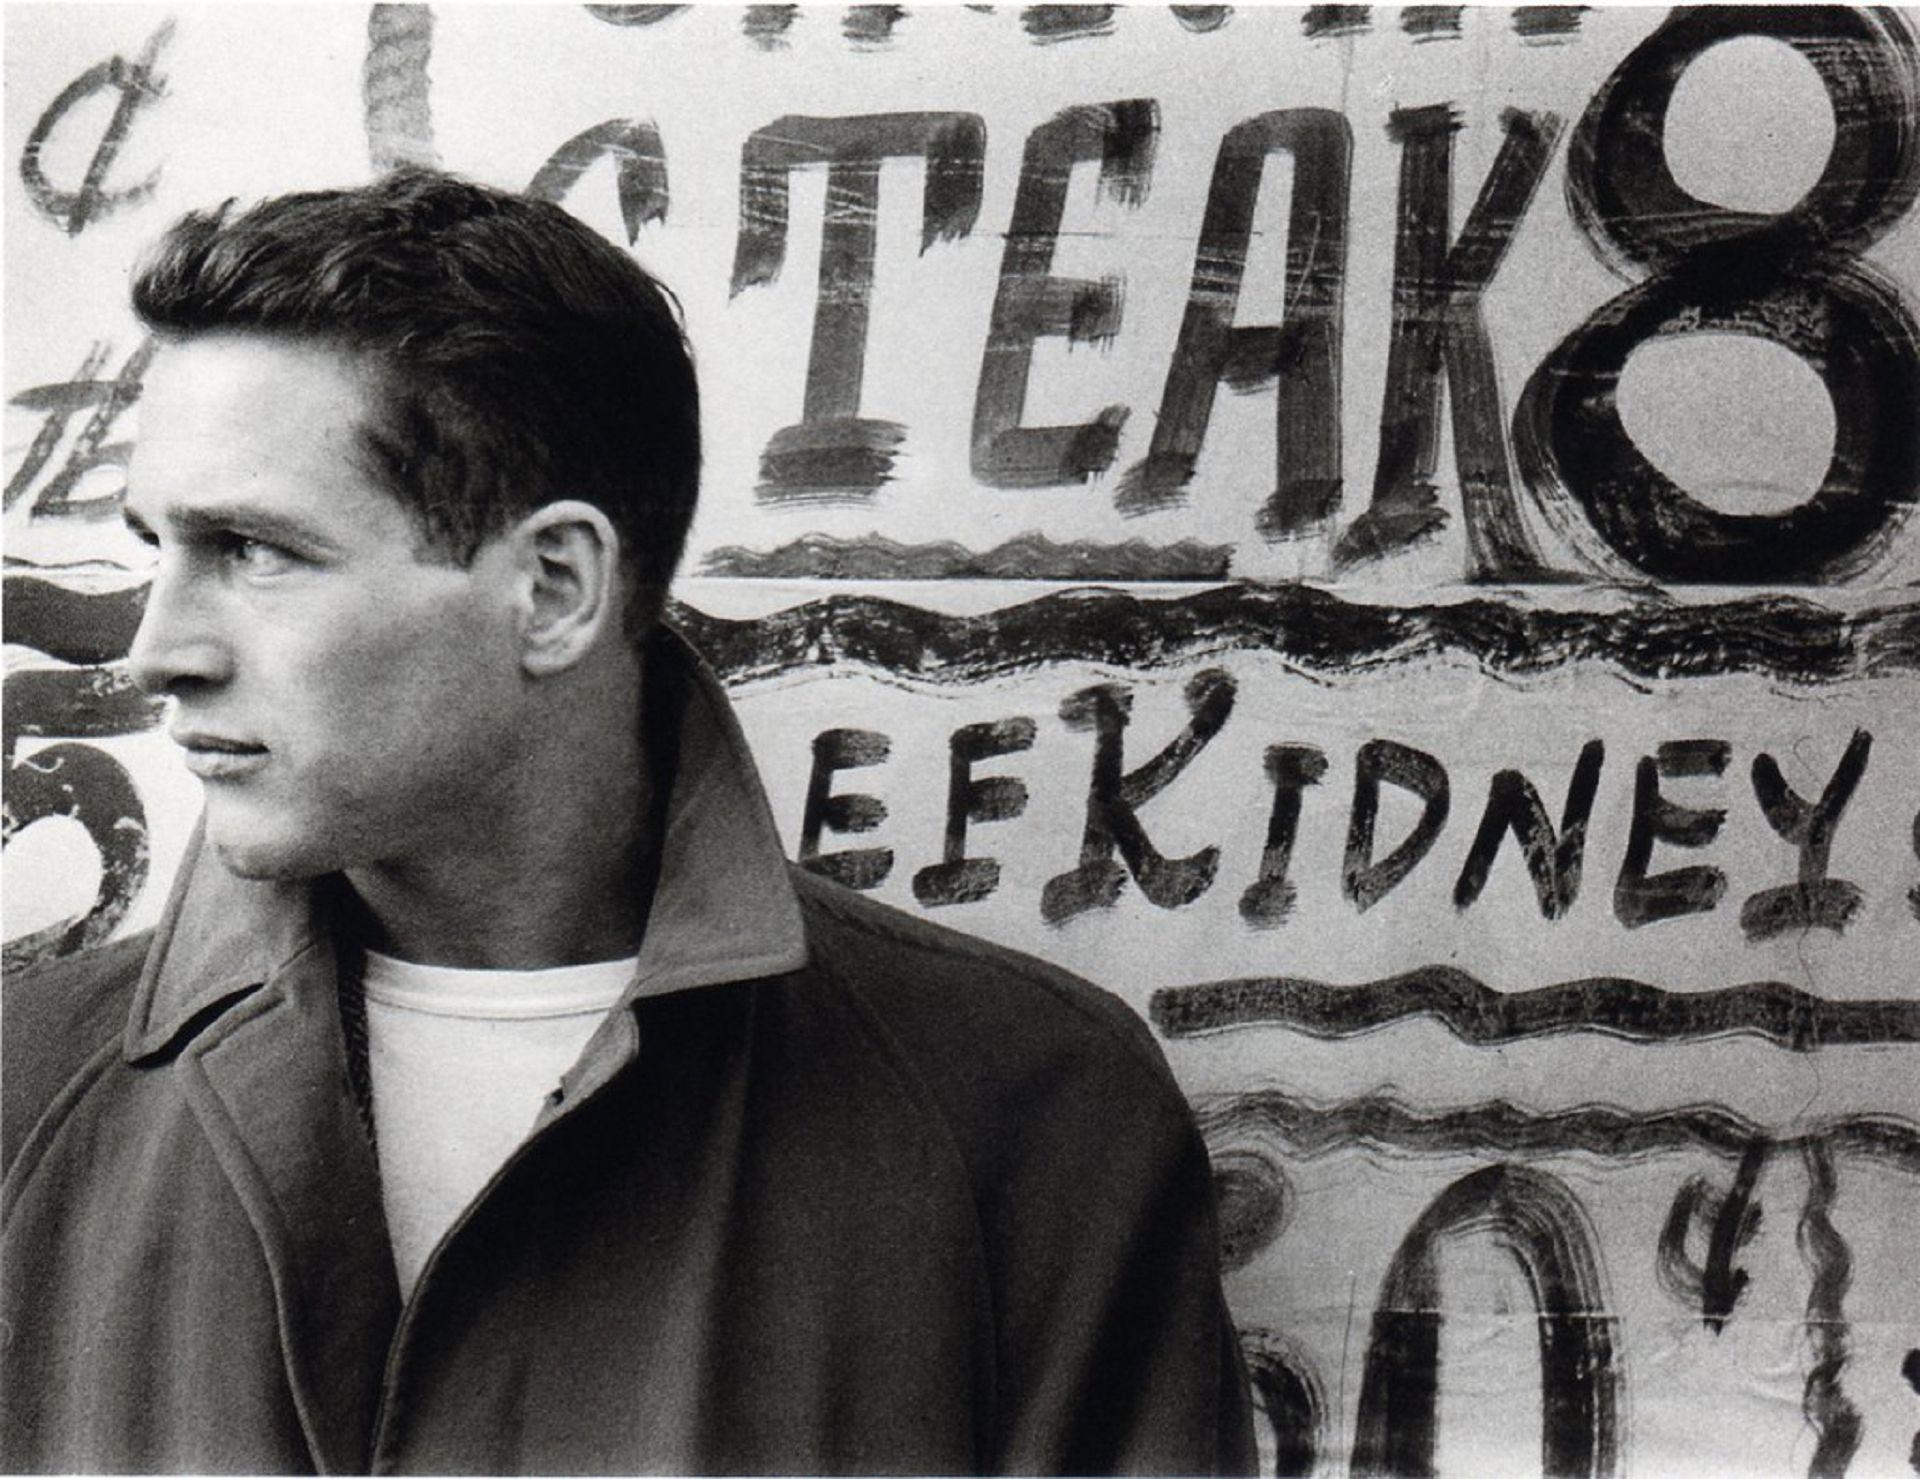 Paul Newman High Definition Wallpaper